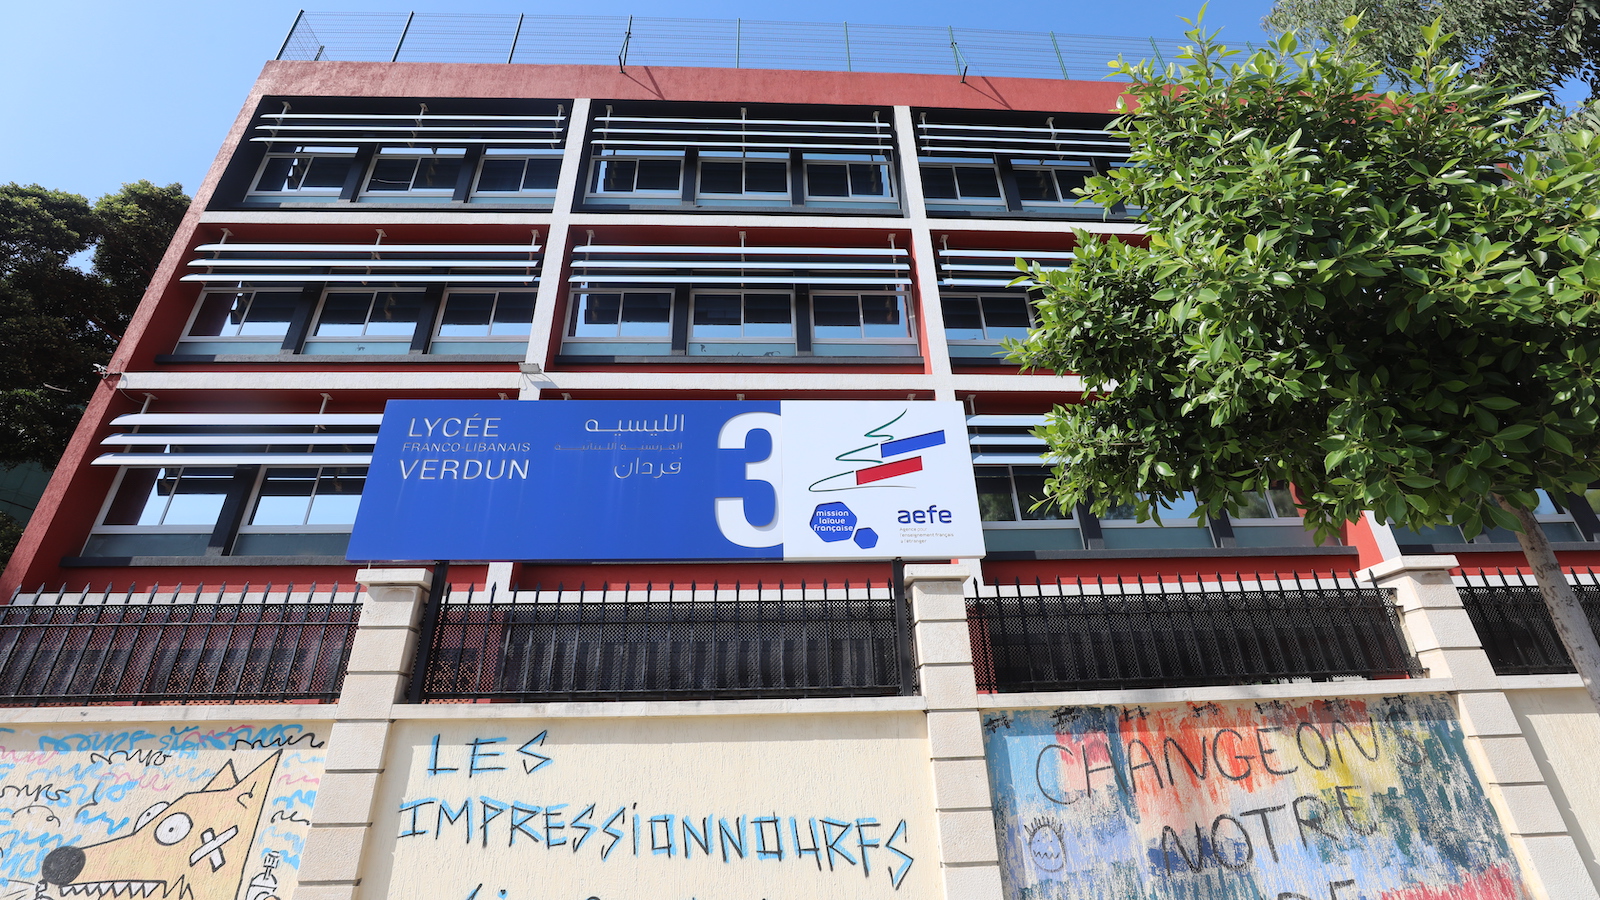 فتنة "مدارس الليسيه": تطرد 178 مدرساً لبنانياً وتستثني الفرنسيين